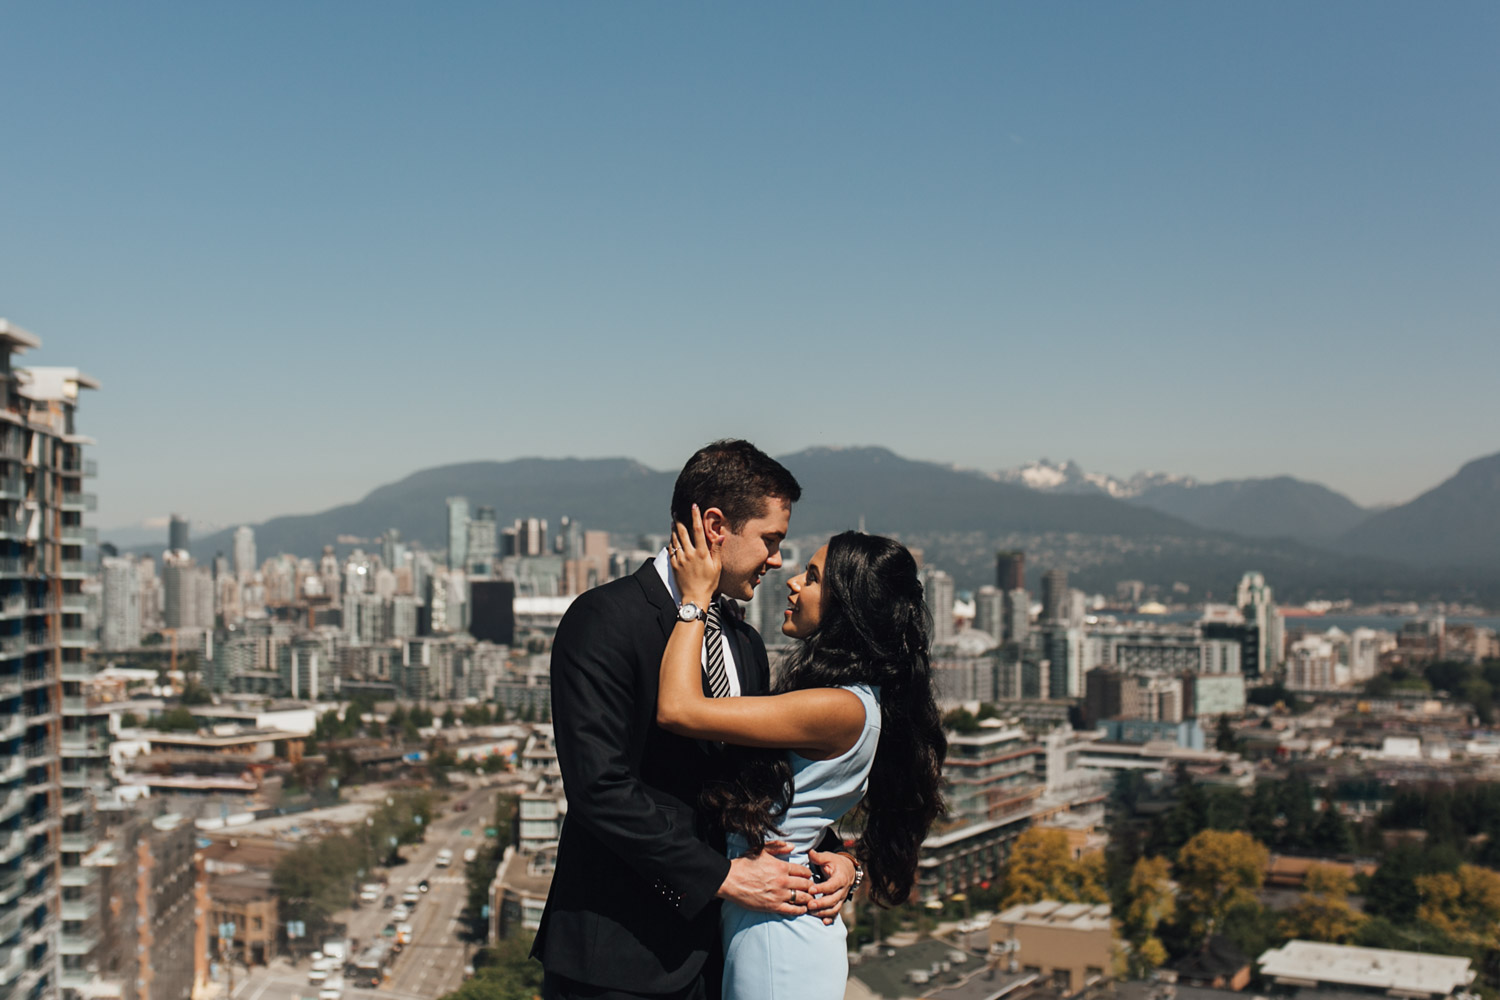 Queen Elizabeth Park Engagement Photography, Vancouver BC | Michelle & Simon